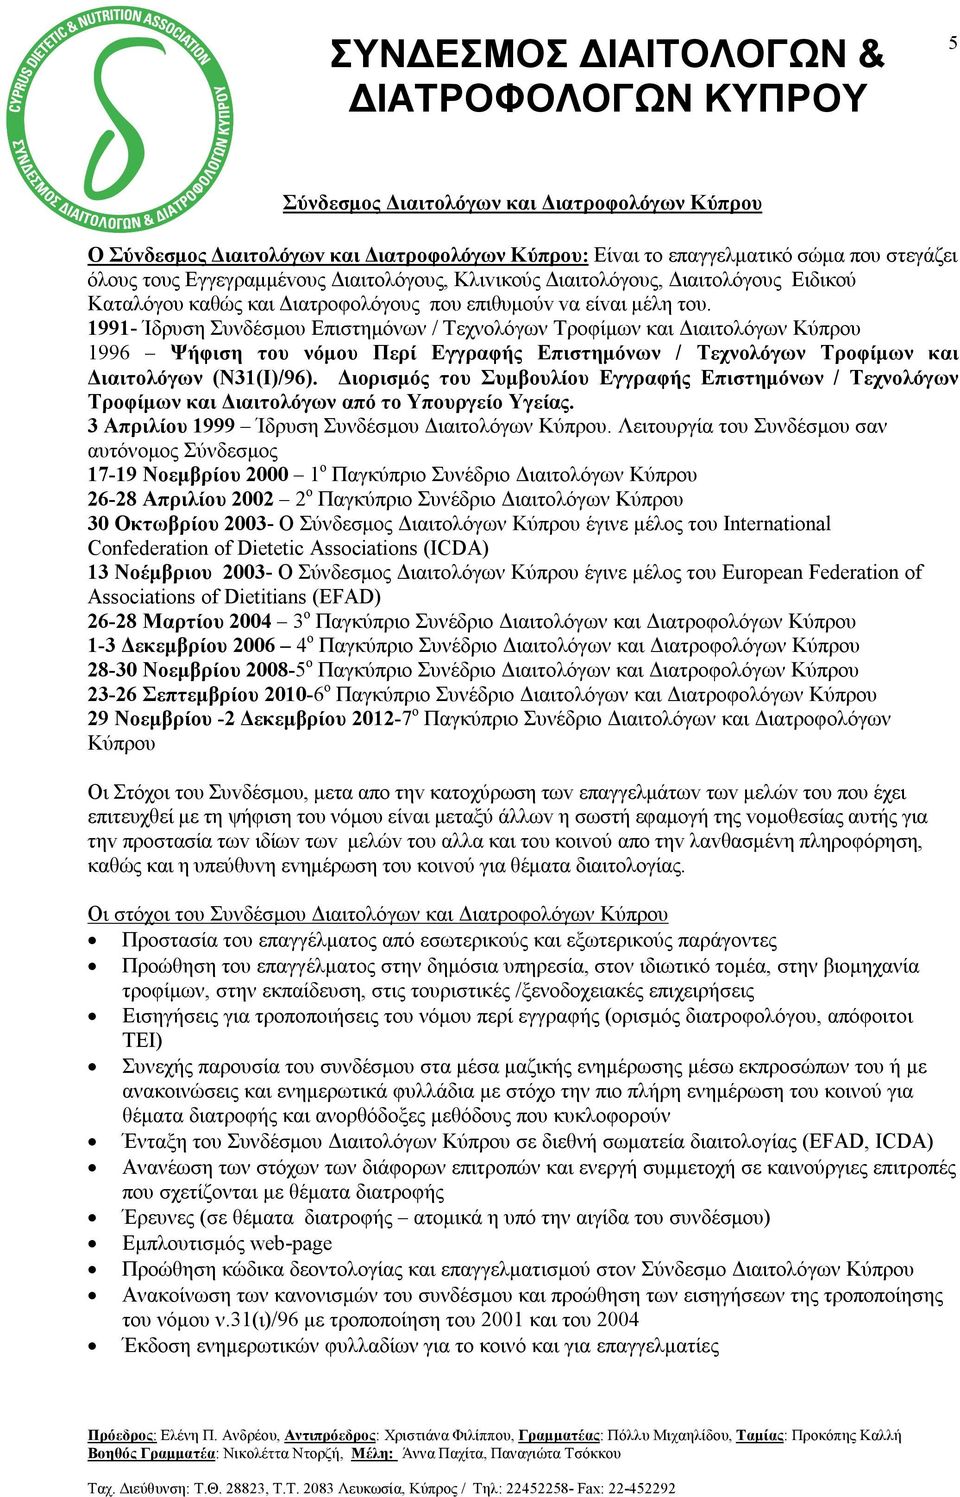 1991- Ίδρυση Συνδέσμου Επιστημόνων / Τεχνολόγων Τροφίμων και Διαιτολόγων Κύπρου 1996 Ψήφιση του νόμου Περί Εγγραφής Επιστημόνων / Τεχνολόγων Τροφίμων και Διαιτολόγων (Ν31(Ι)/96).